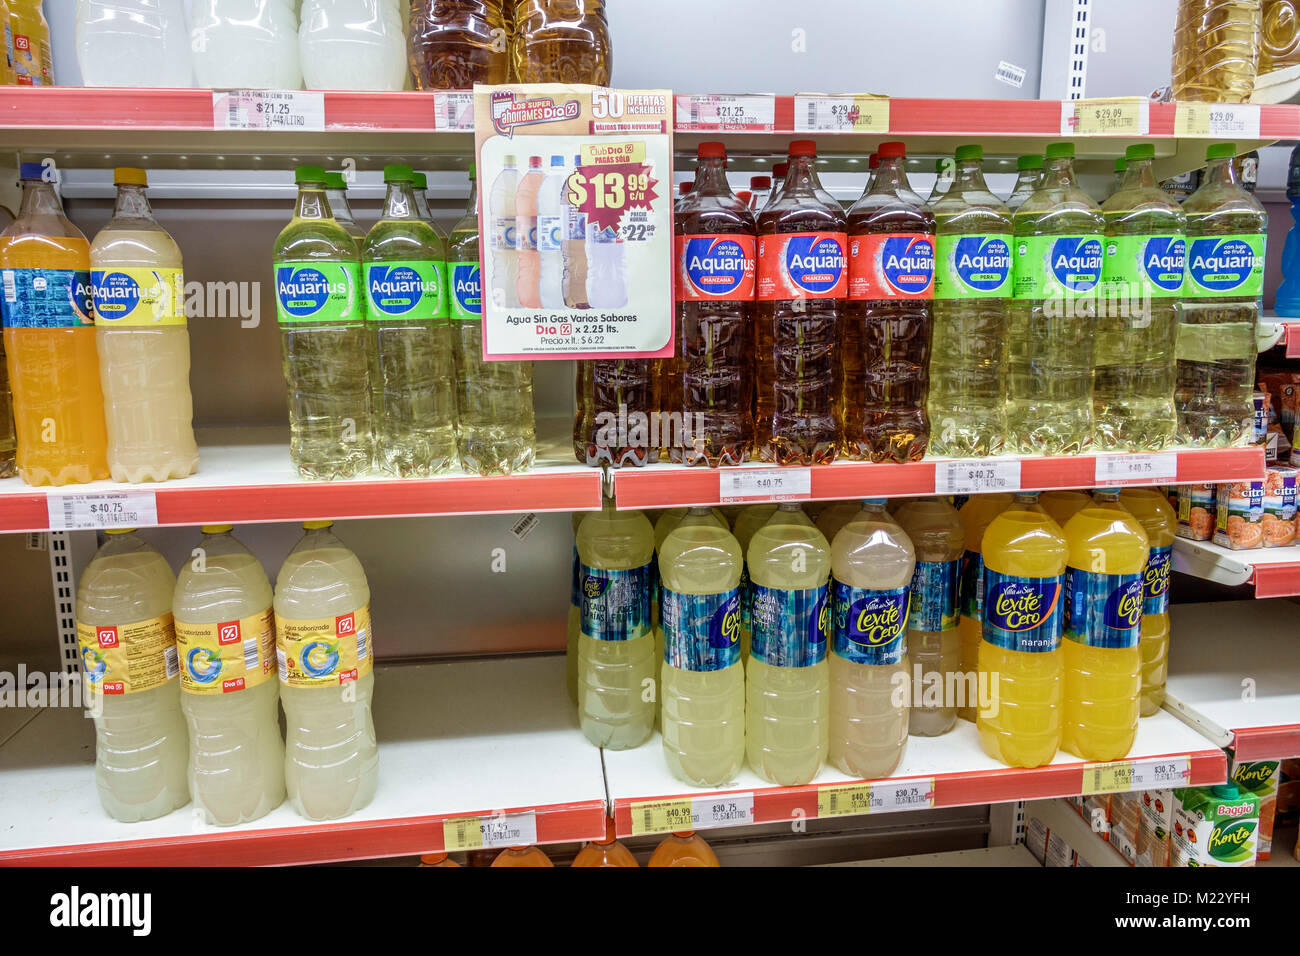 Buenos Aires Argentinien, Dia Markt, Supermarkt Lebensmittelgeschäft Lebensmittel, Soda, Obst Früchte Getränke Getränke Getränke Plastikflasche, Regal, Schild, speziell, Hispanic La Stockfoto